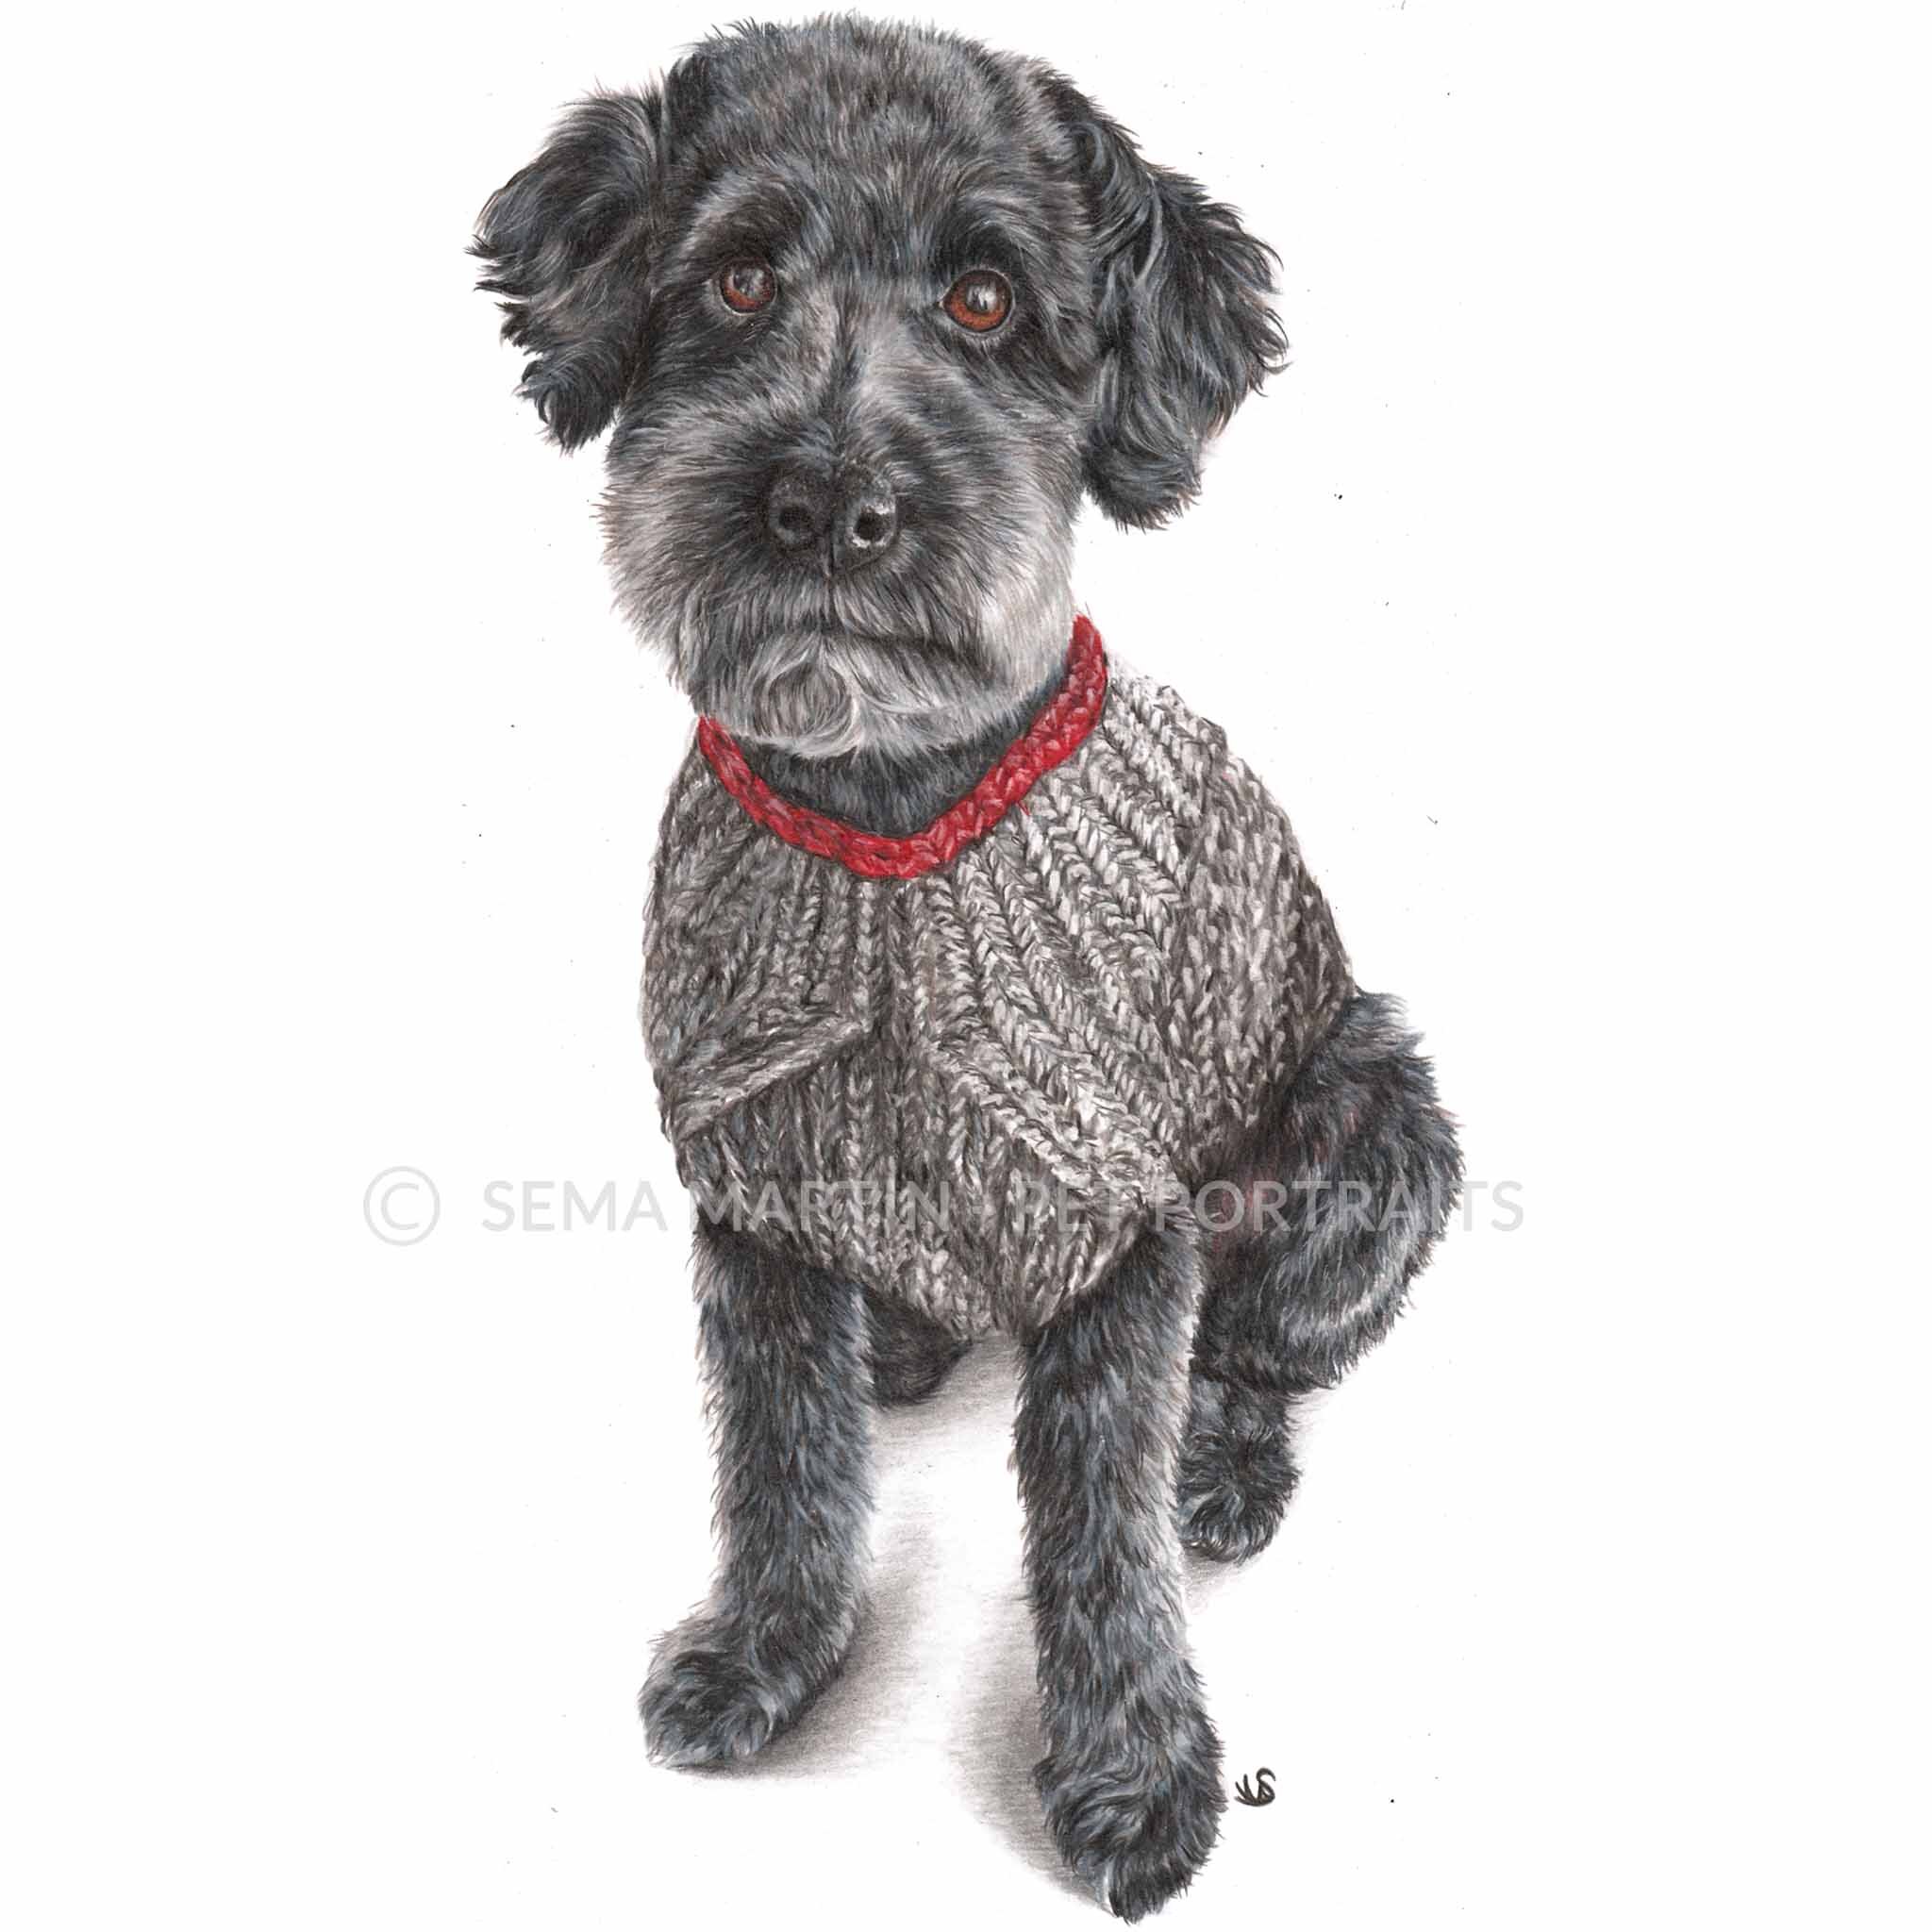 'Jackson' - Canada, 8.3 x 11.7 inches, 2019, Colour Pencil Dog Portrait (Copy)